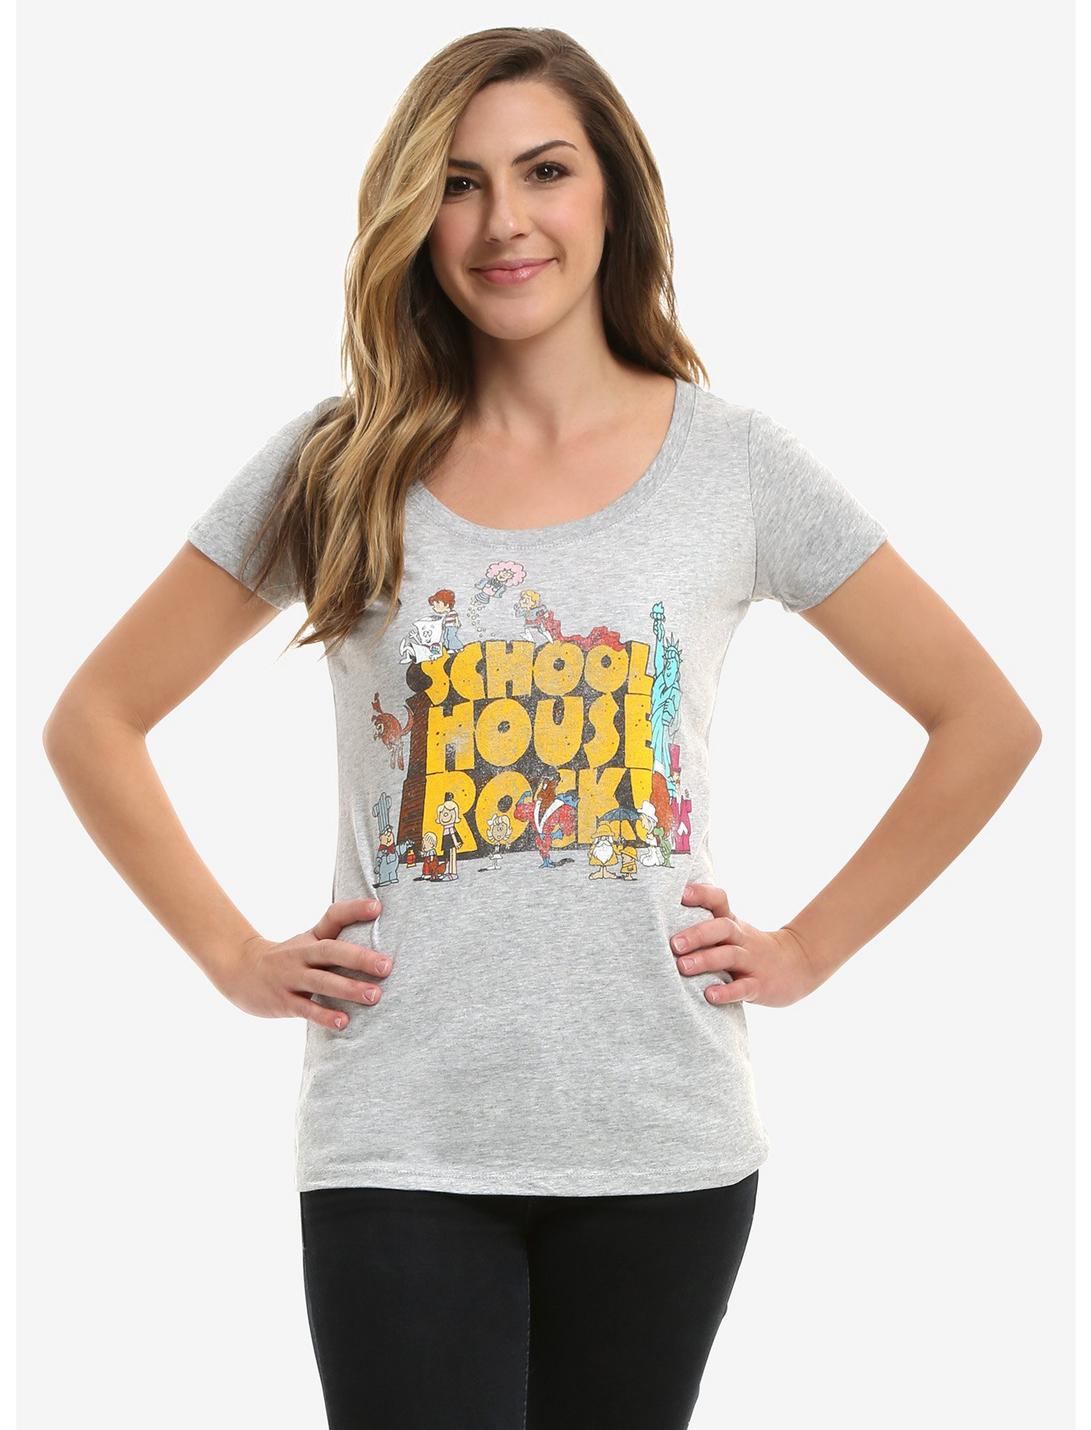 Schoolhouse Rock Womens T-Shirt, GREY, hi-res